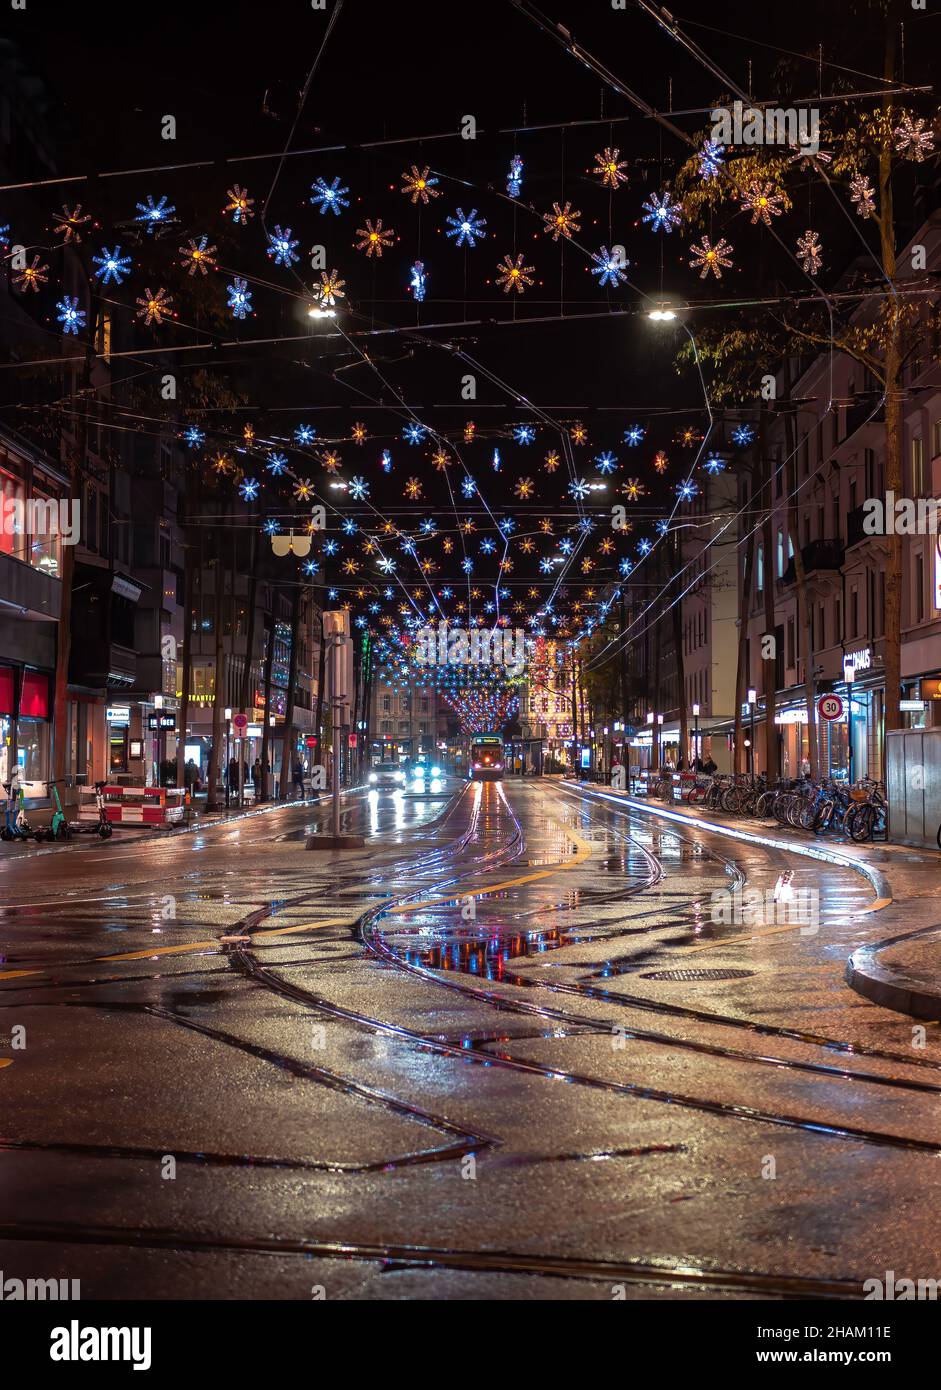 Zürich, Schweiz - 30. November 2021: Beleuchtete Lowenstrasse in Zürich und  ihre weihnachtliche Dekoration Stockfotografie - Alamy